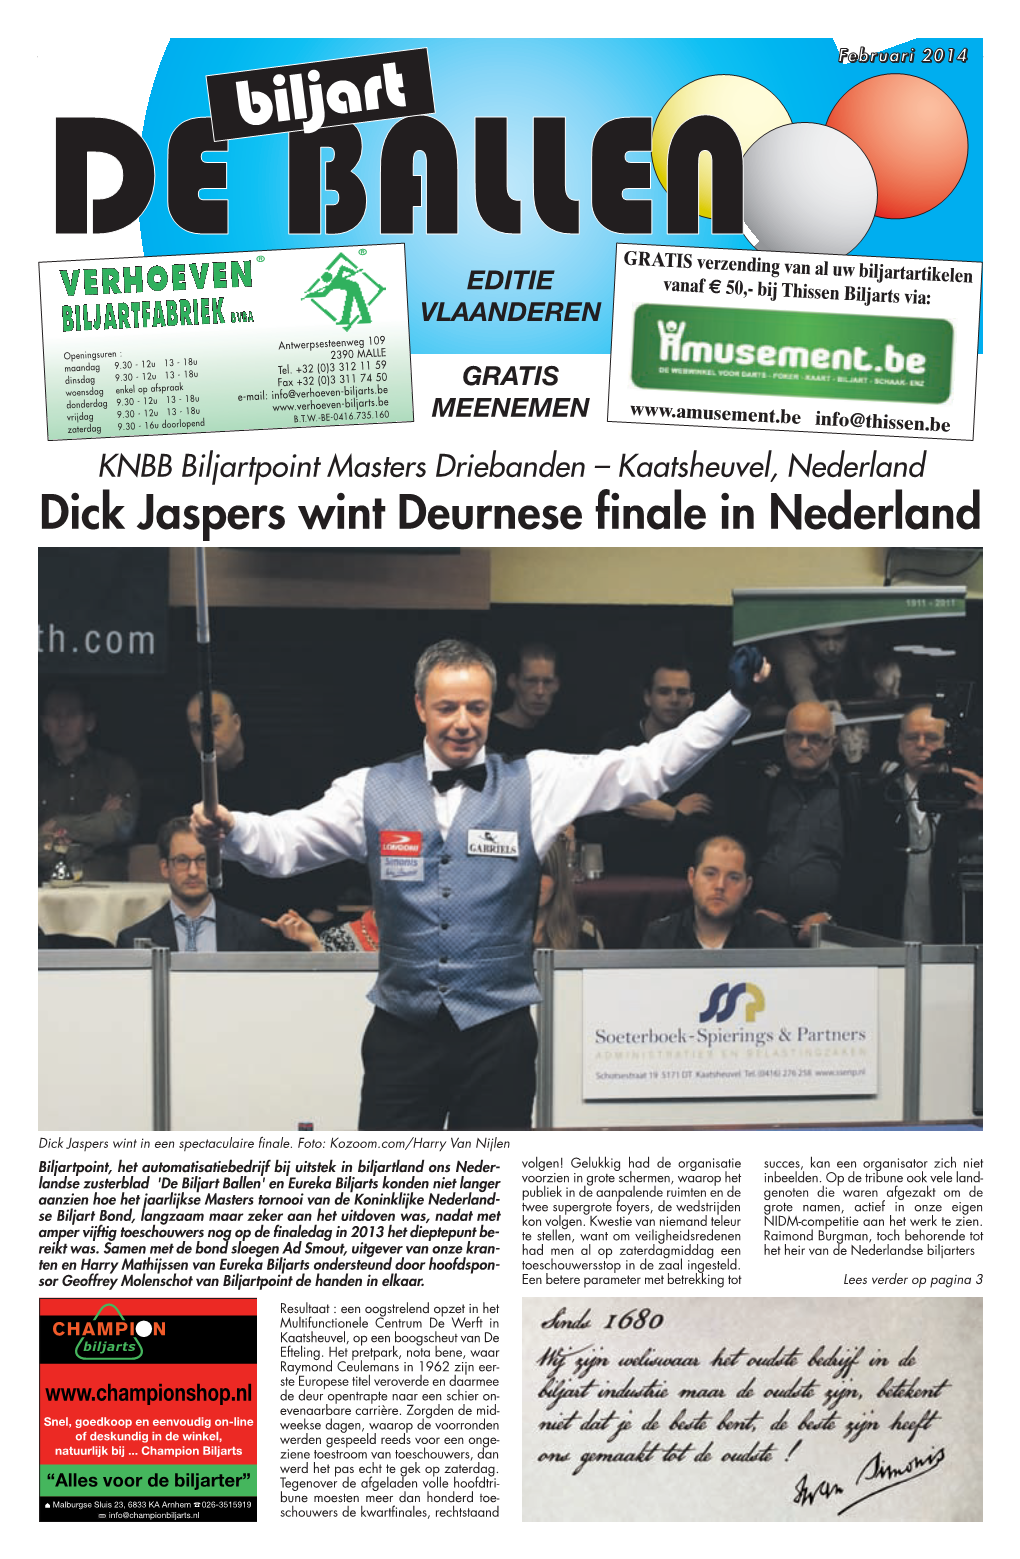 Dick Jaspers Wint Deurnese Finale in Nederland